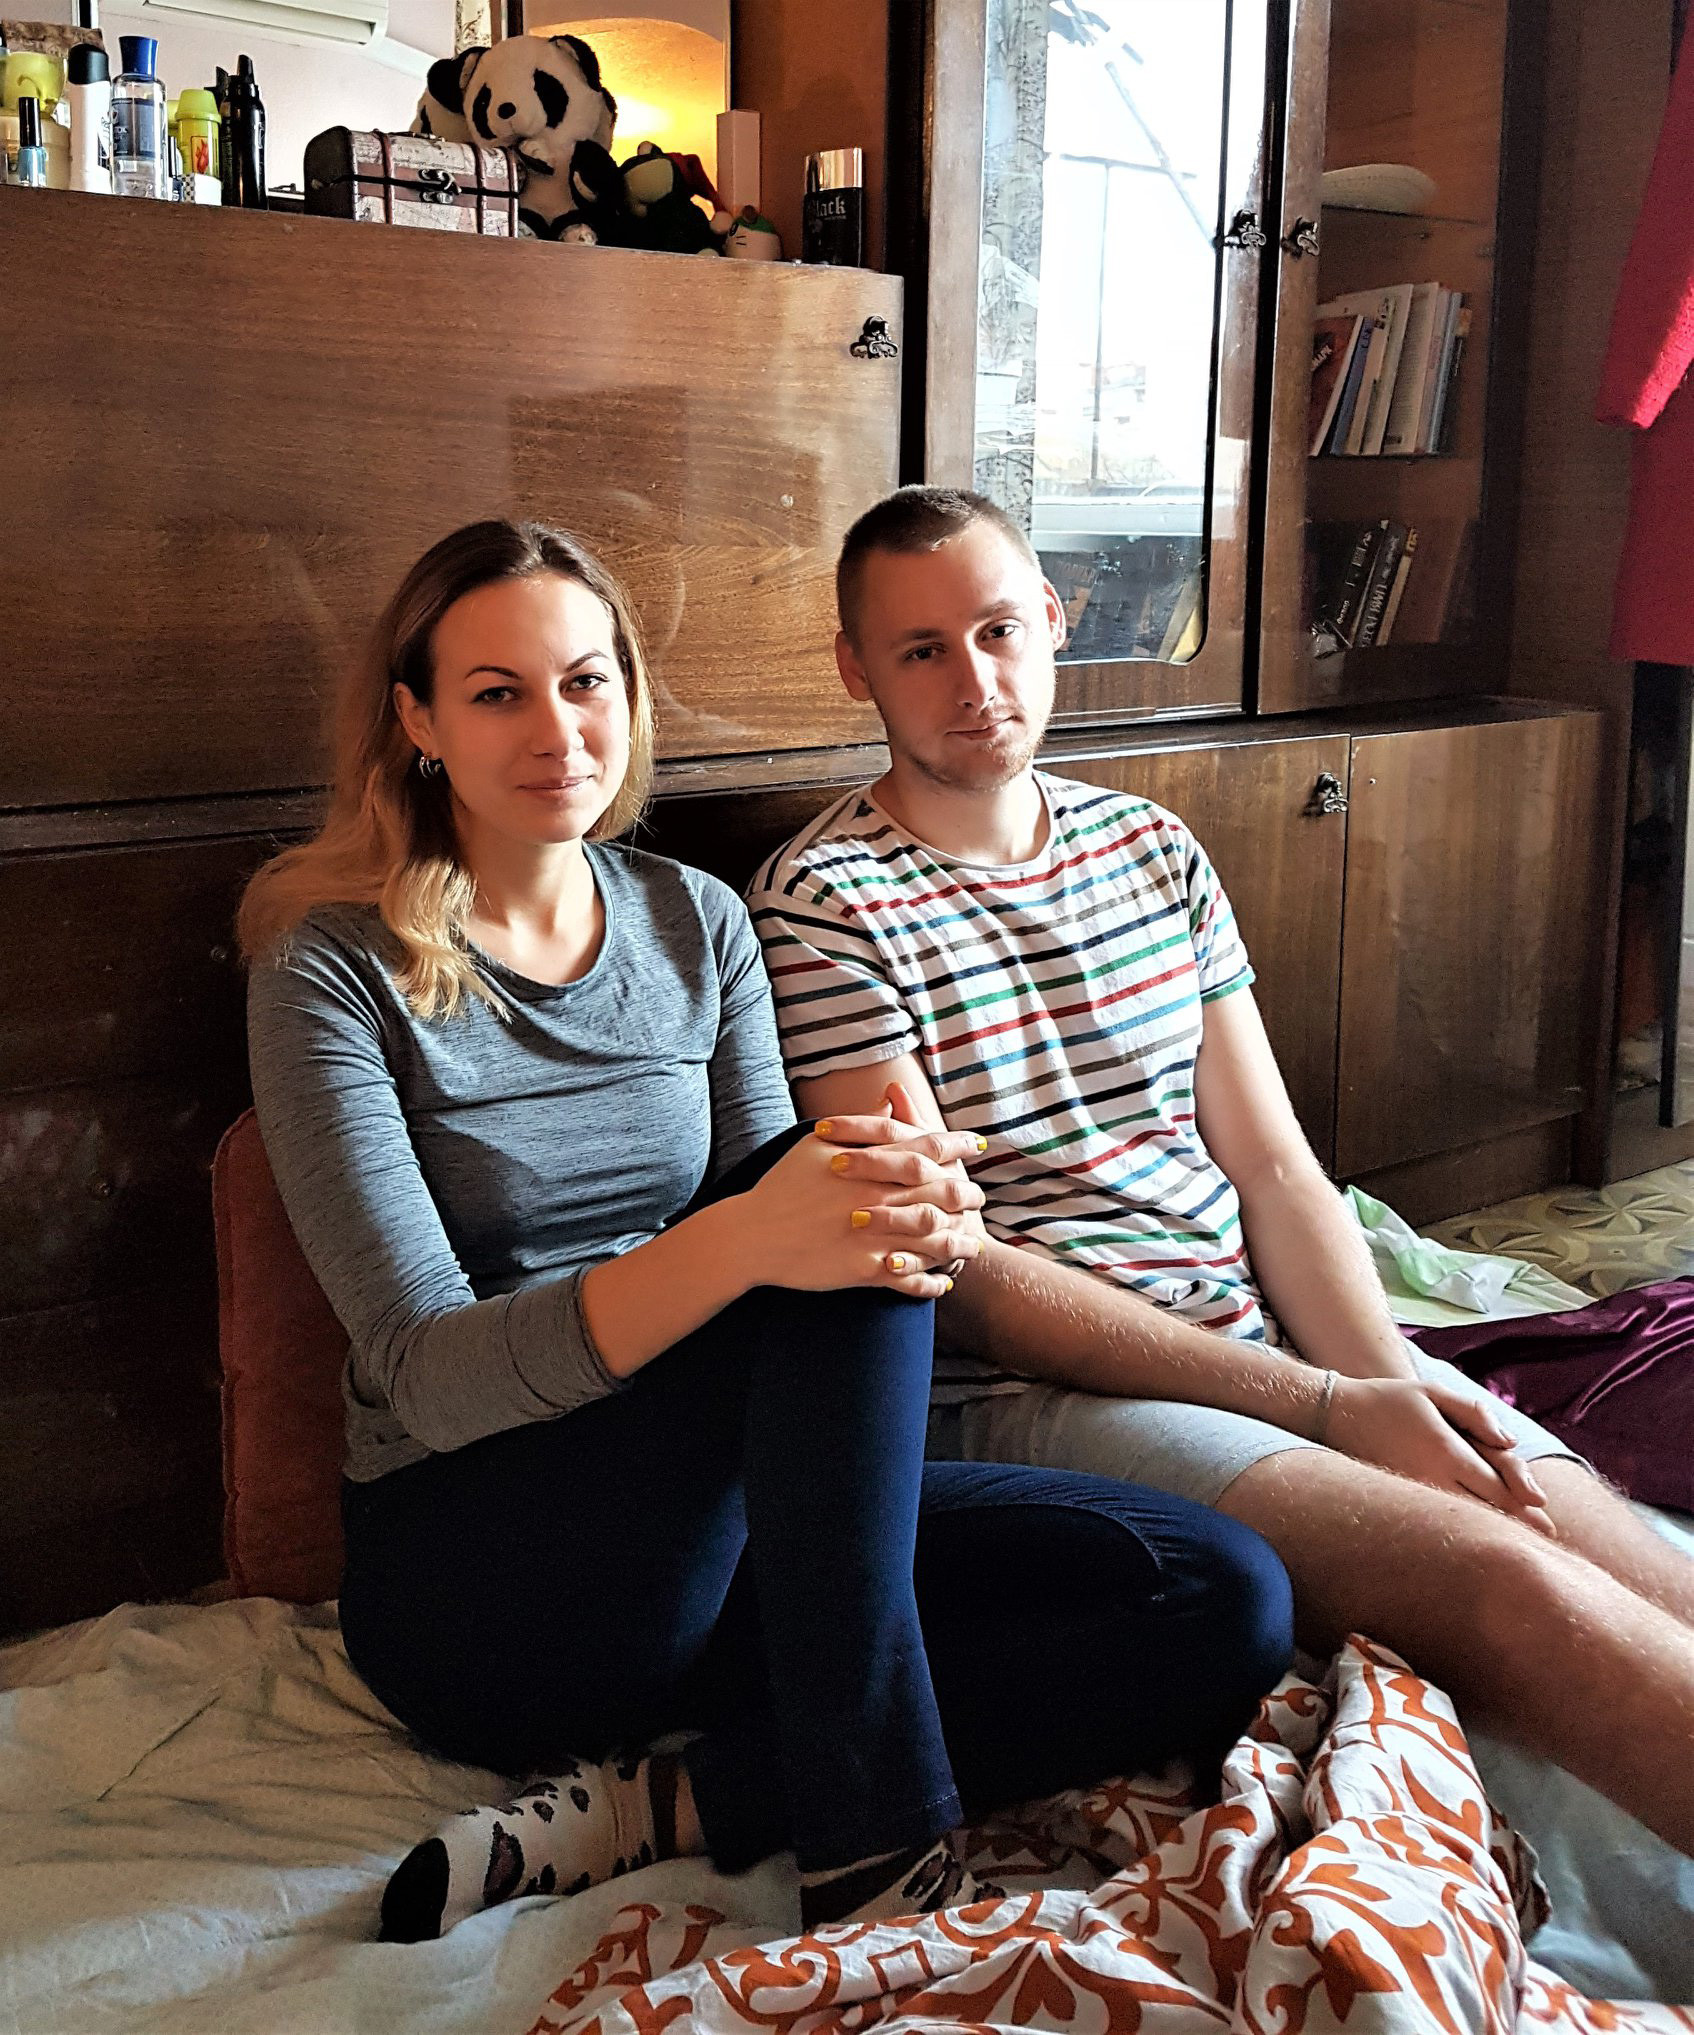 Roman e Masha vivono in un piccolo appartamento nel centro di Slovjansk, nell’Ucraina orientale. Entrambi lavorano per l’Ong “People in Need”, sostenendo la popolazione civile del Donbass. Roman ha lasciato la sua casa a Donetsk nel 2014